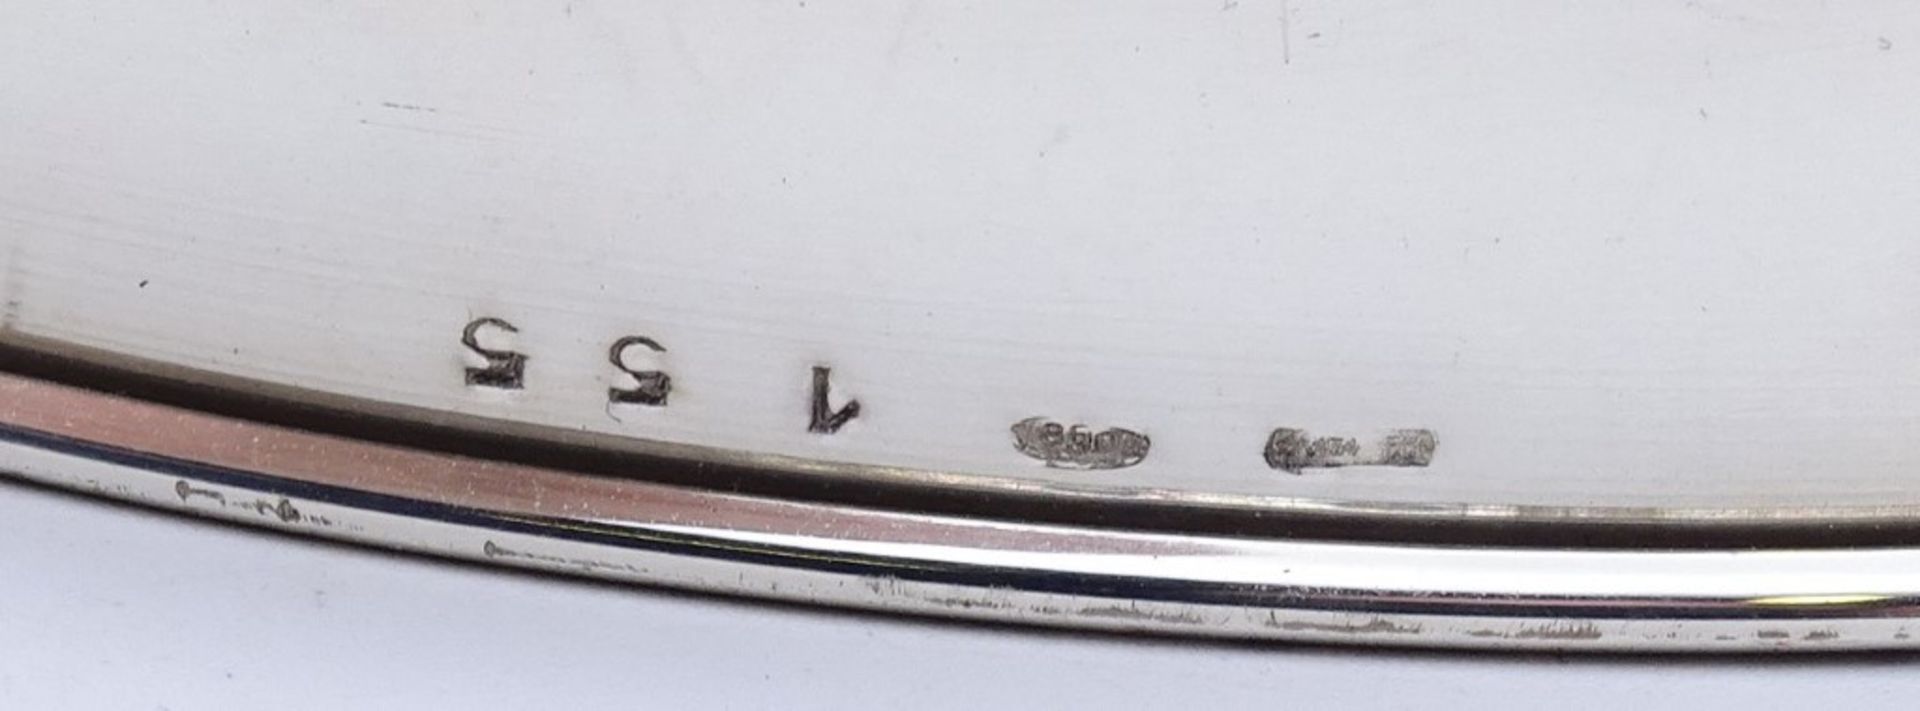 Lampenfuss in Silber 0.800, unbenutzt, Delle und etwas verbogen, ca. 202gr., H- 32 cm - Bild 5 aus 5